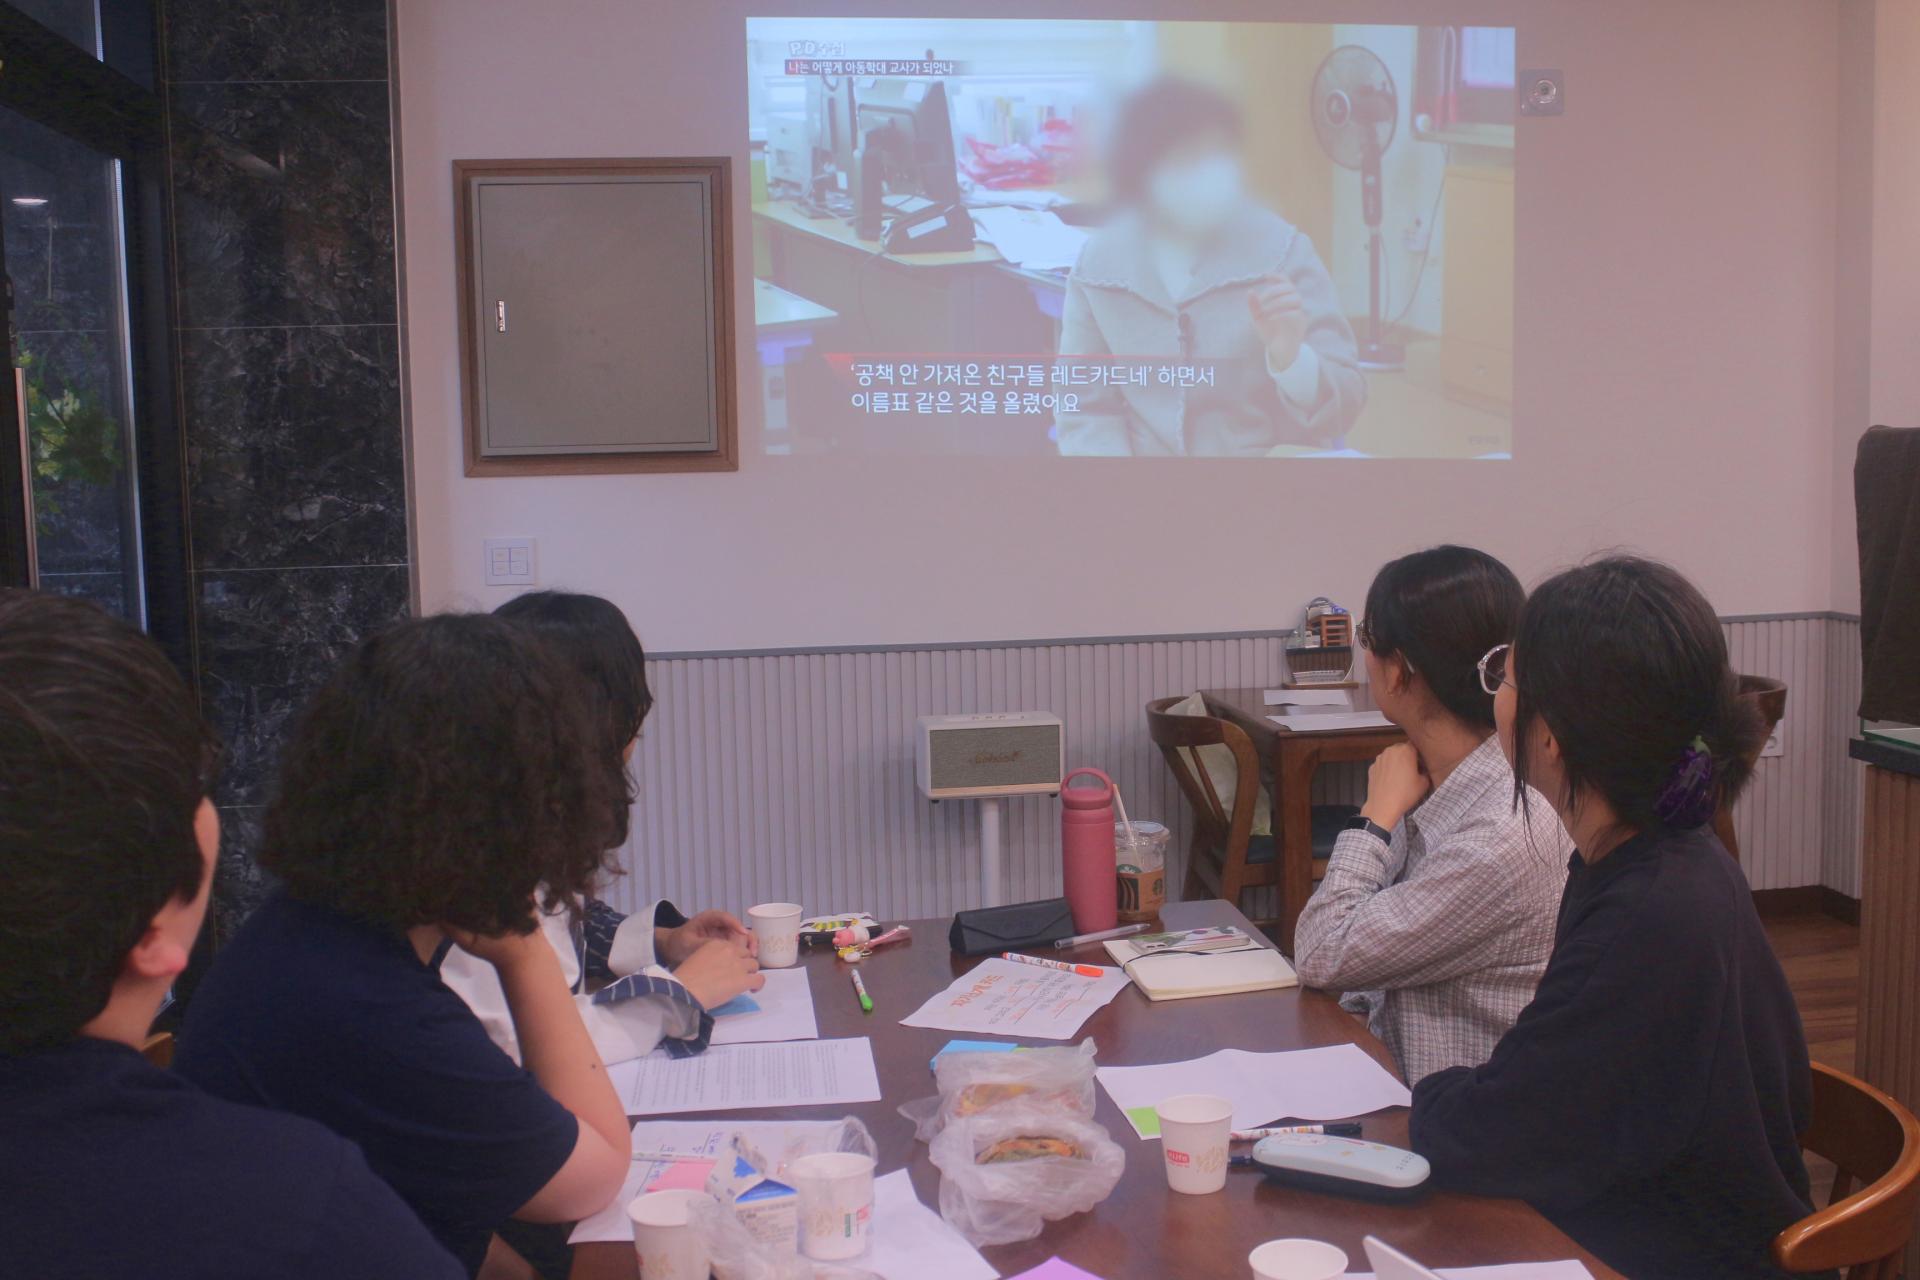 참여자들이 책상에 앉아 빔 프로젝터로 영상을 시청하고 있다. 